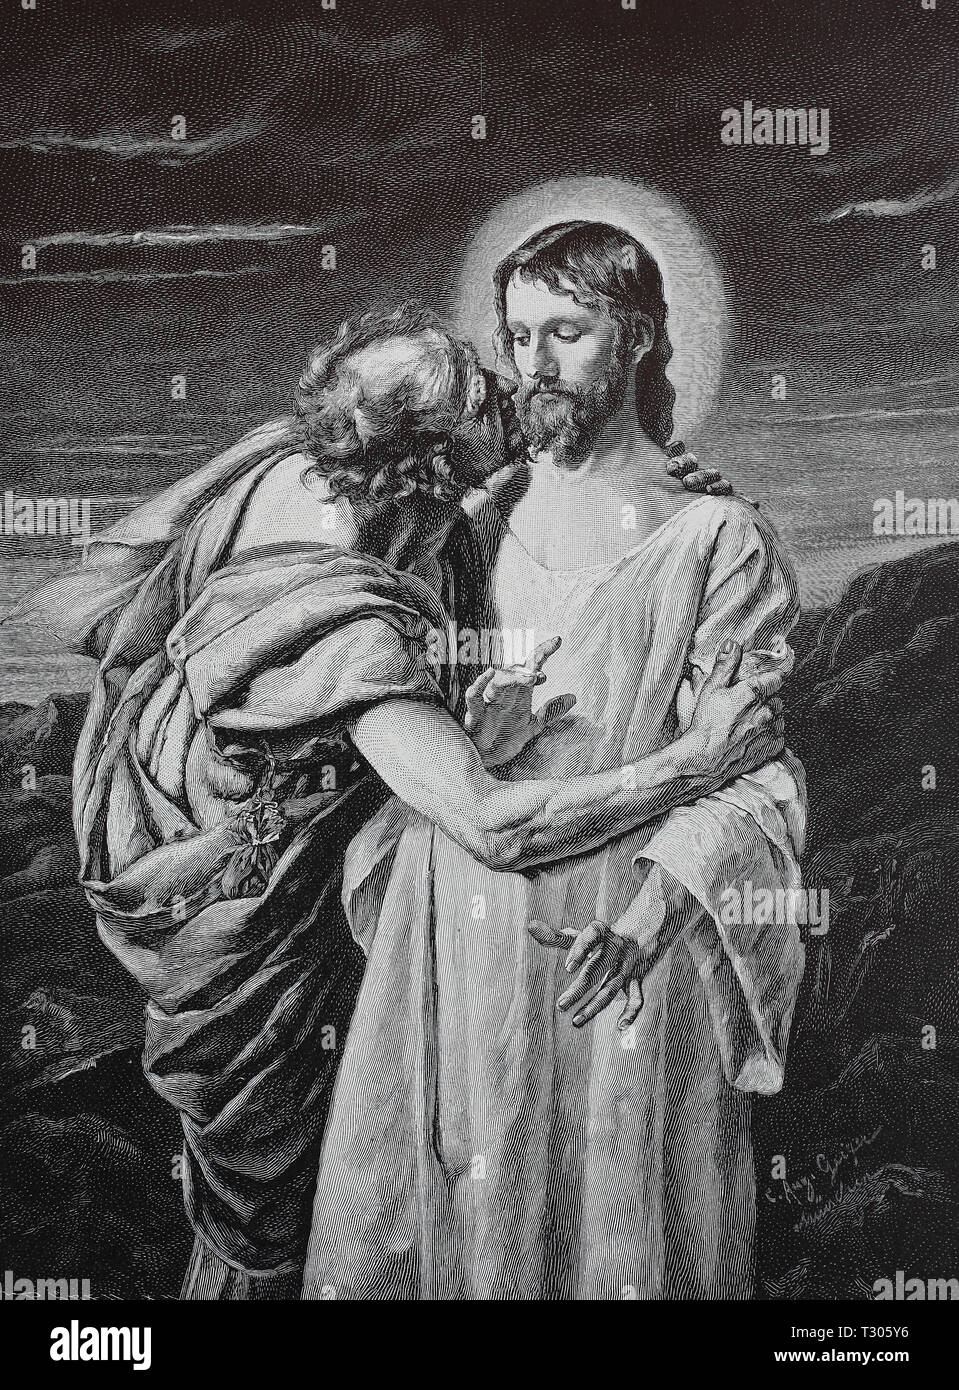 L'amélioration de la reproduction numérique, Judas trahissant Jésus avec un baiser comme un signal pour arrêter Jésus, Der Judaskuß imprimer à partir d'un original du 19ème siècle Banque D'Images